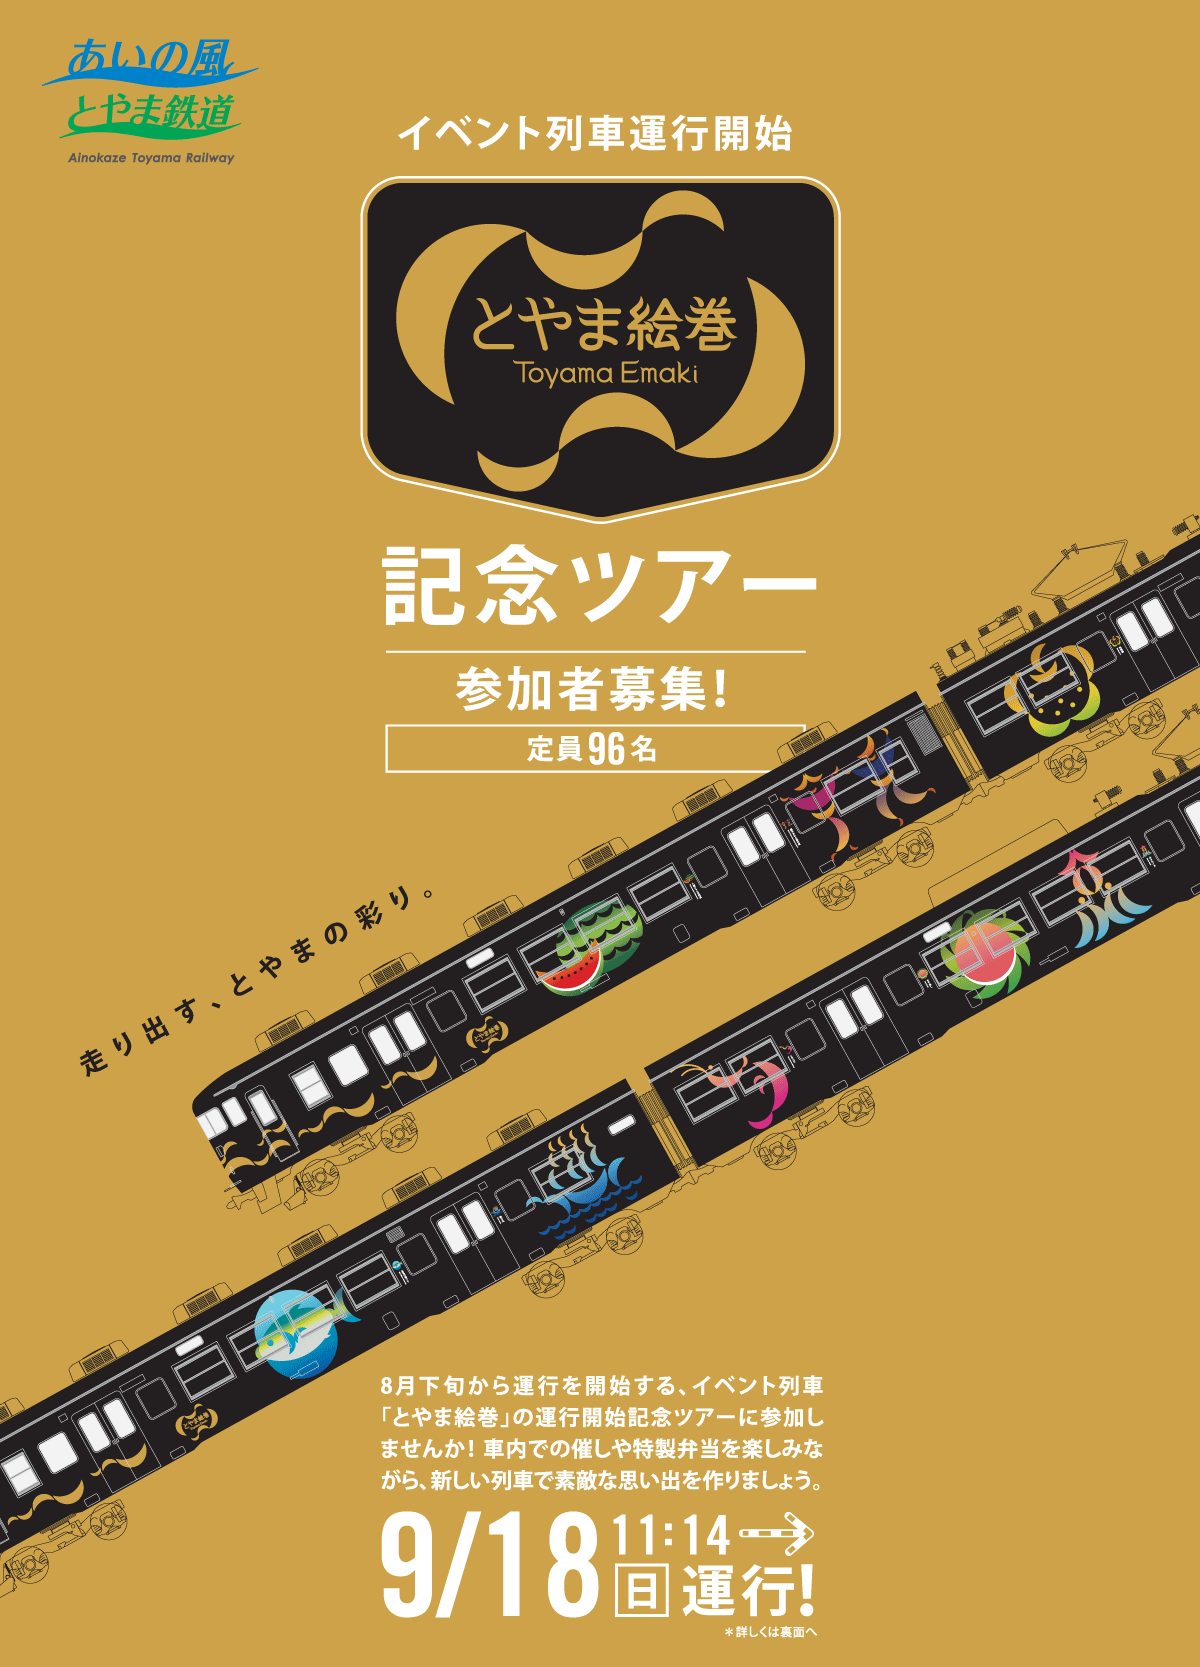 イベント列車「とやま絵巻」の記念ツアー